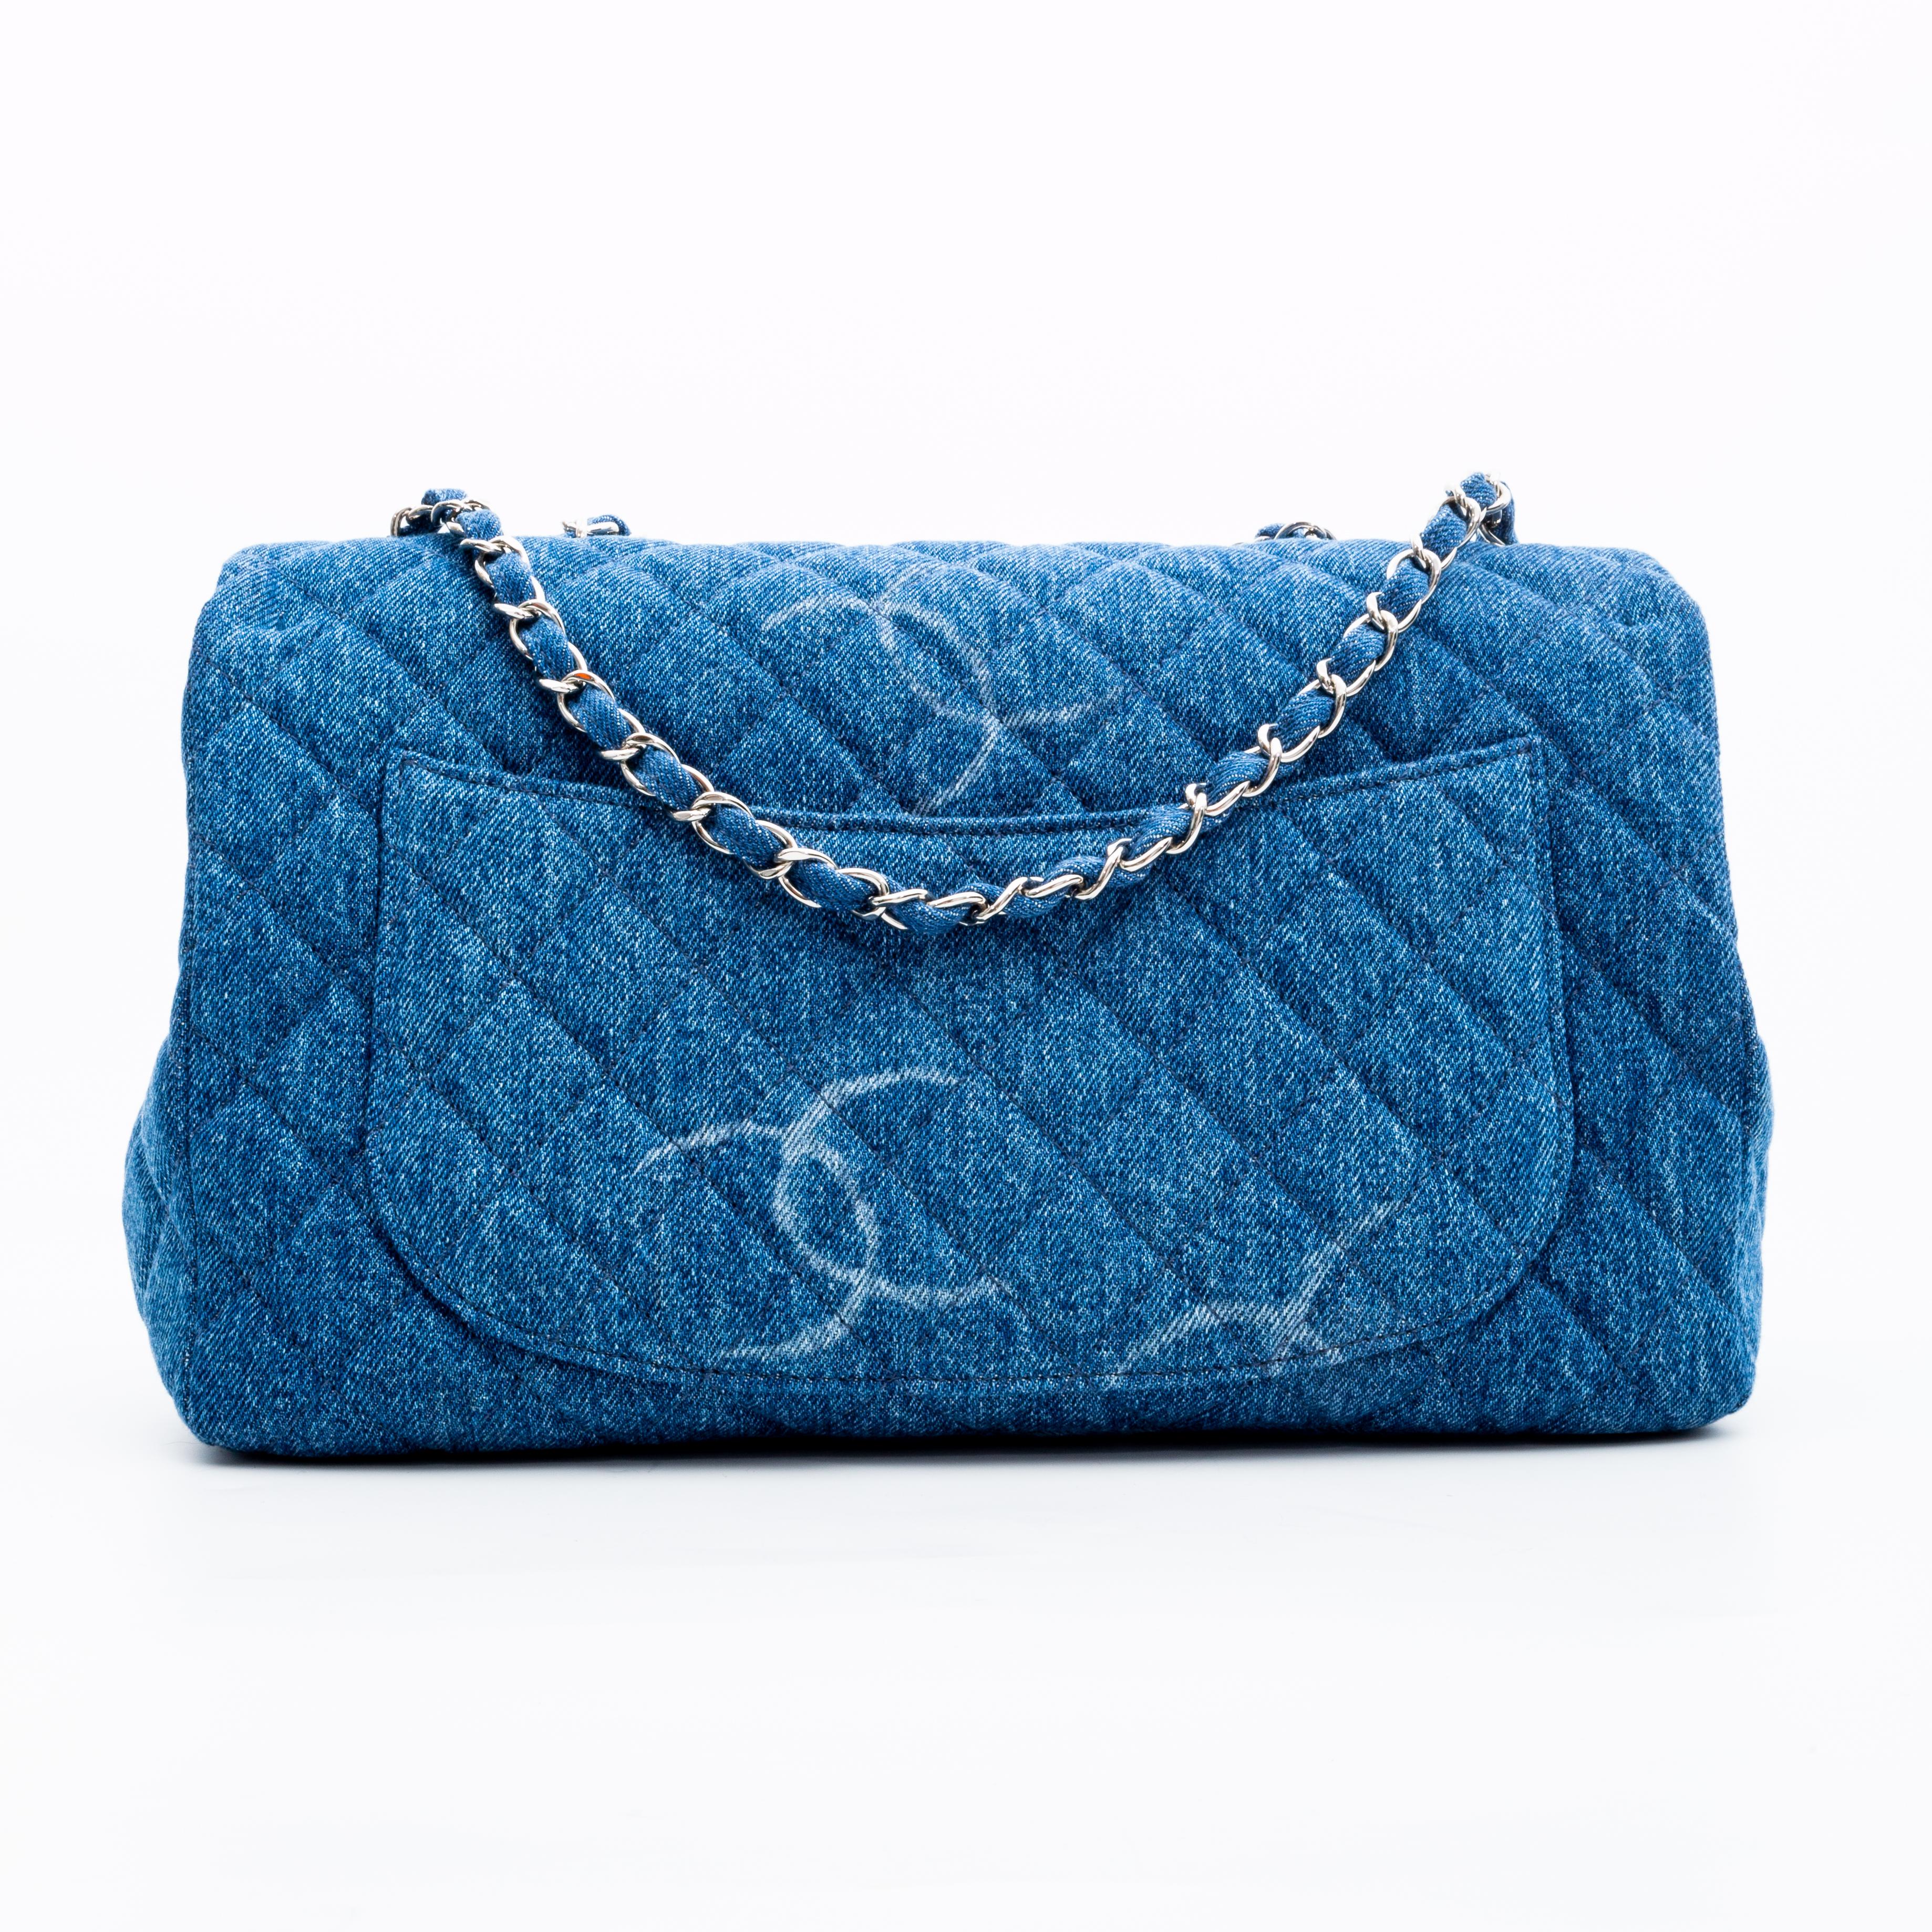 Jumbo Single Flap Bag aus der Herbst/Winter-Kollektion 20B. Diese Umhängetasche ist aus blauem:: rautenförmig gestepptem Denim gefertigt und mit weißen Chanel-Logos bedruckt. Die Tasche hat eine silberne Kette:: die mit Denim verflochten ist:: eine